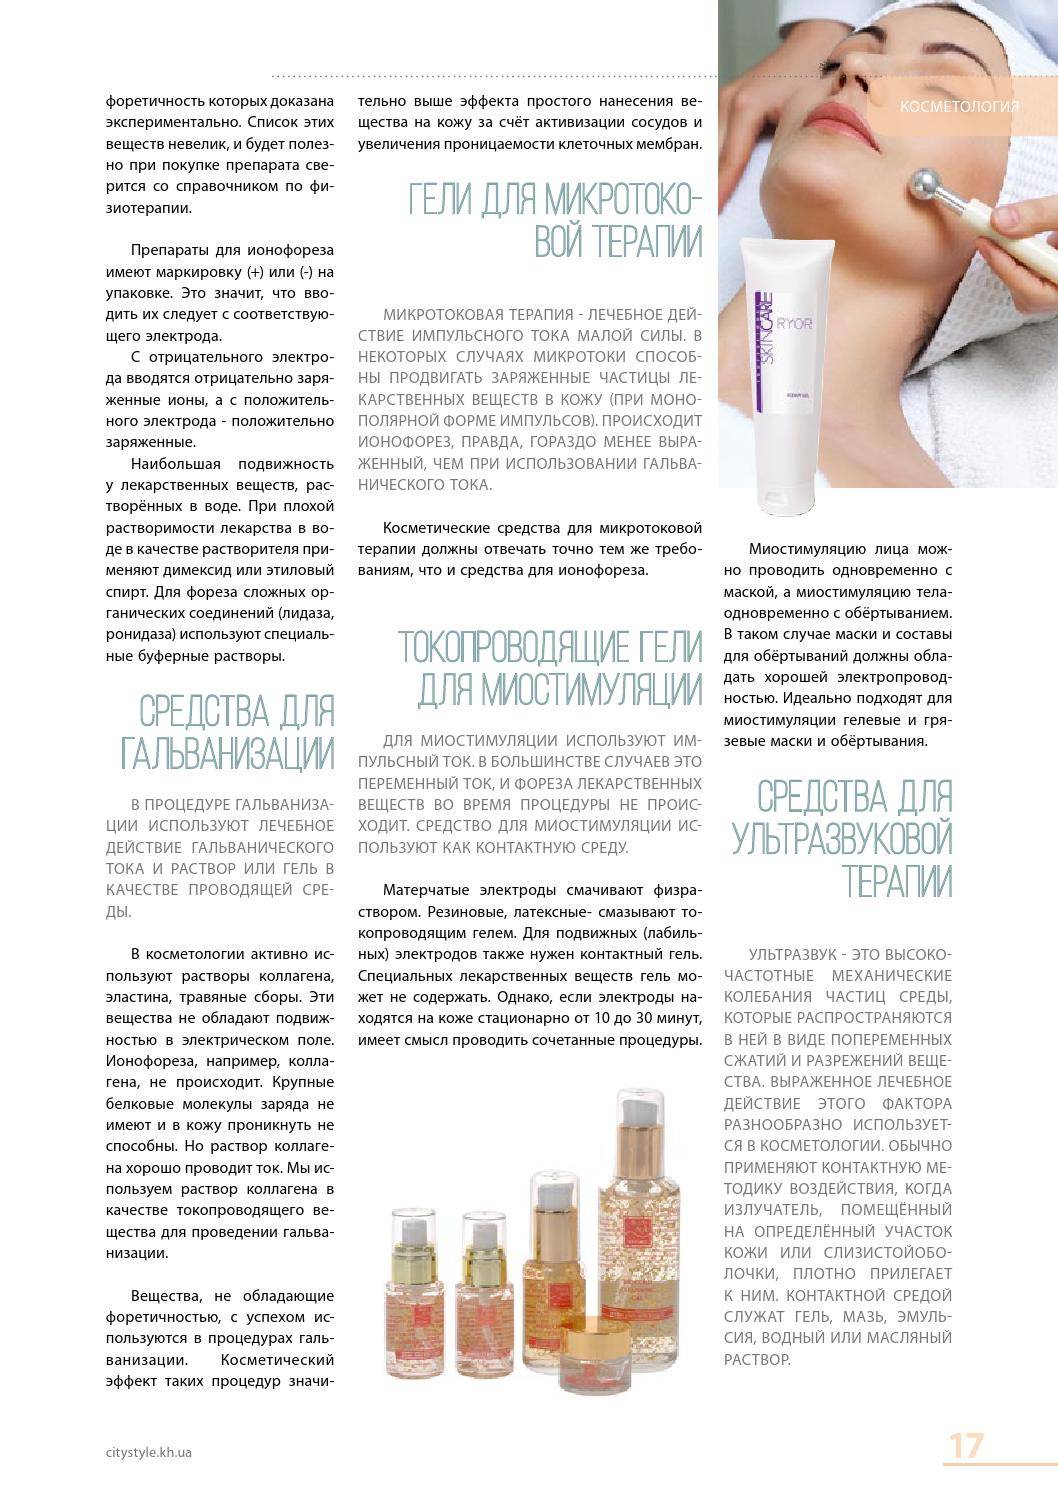 Биоревитализация лица - что это за процедура, фото до и после, цена, отзывы | expertcosmo.ru